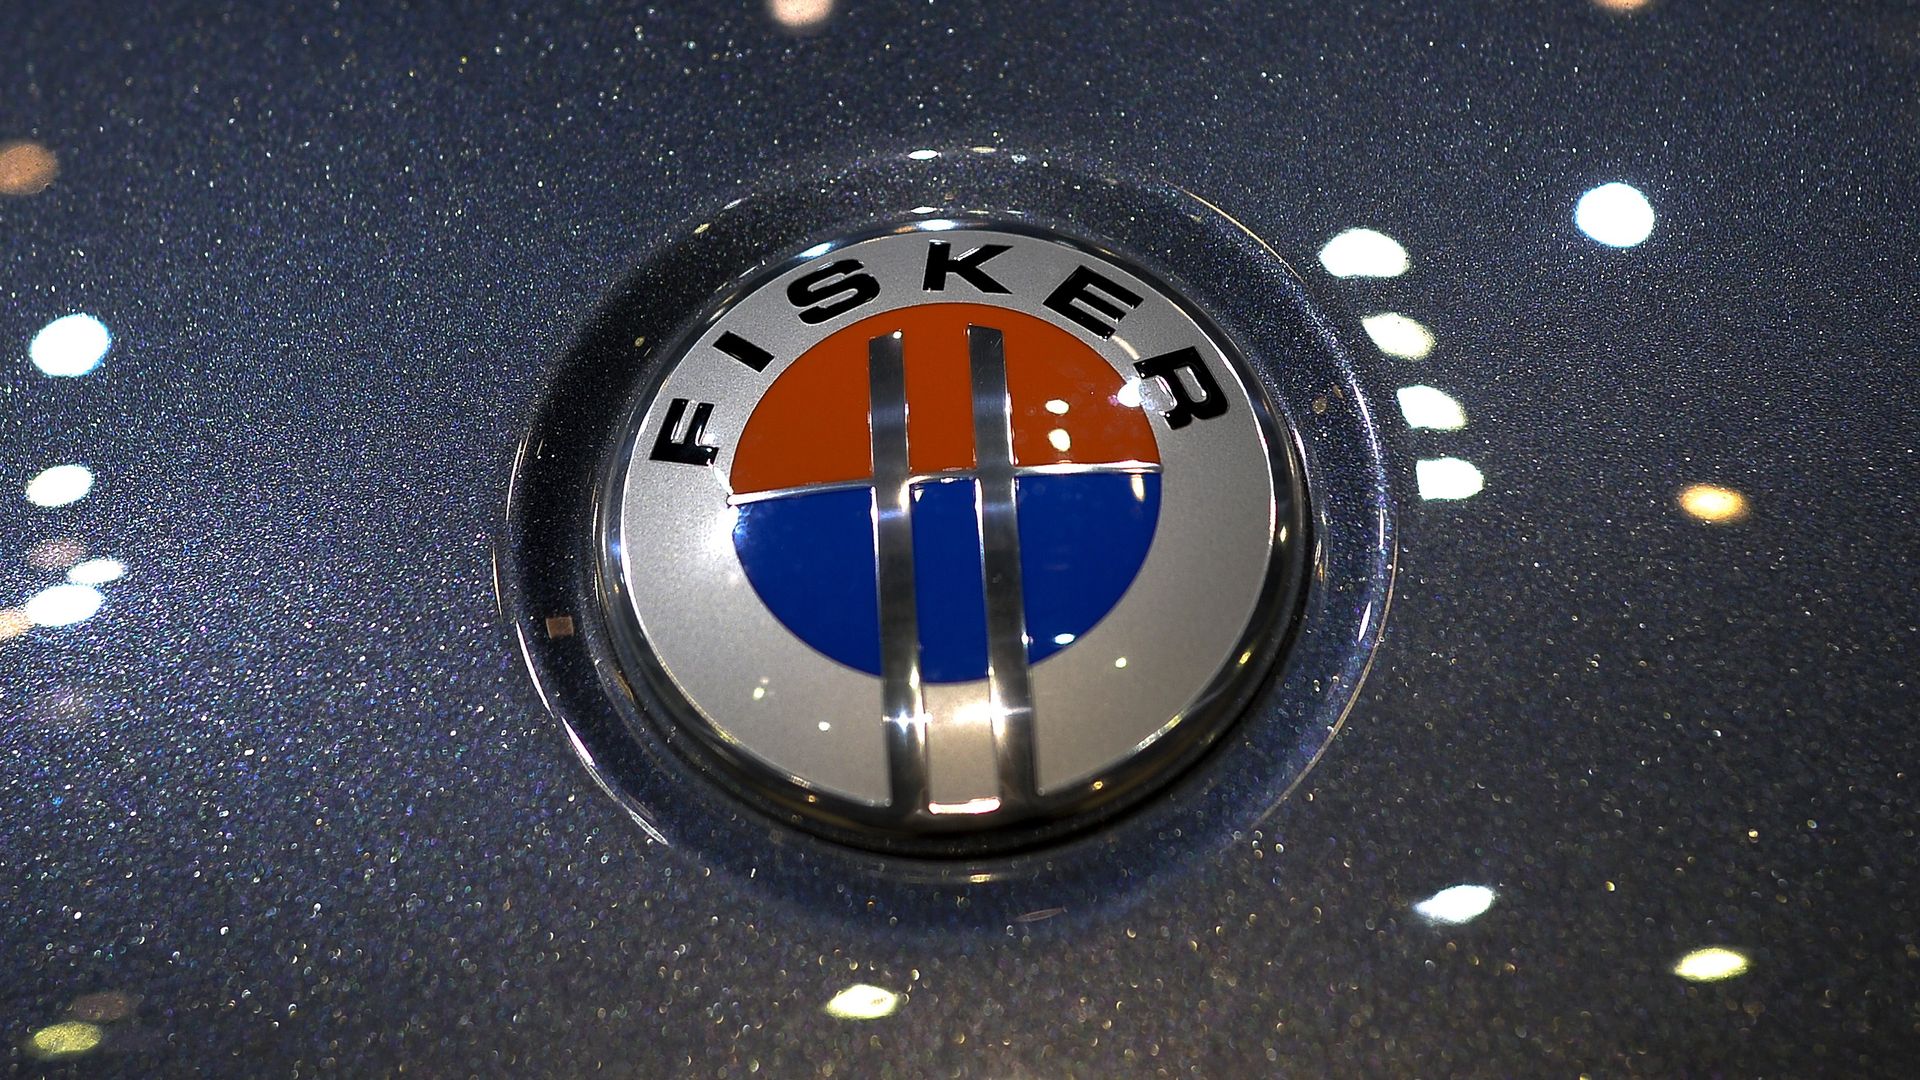 A Fisker car emblem